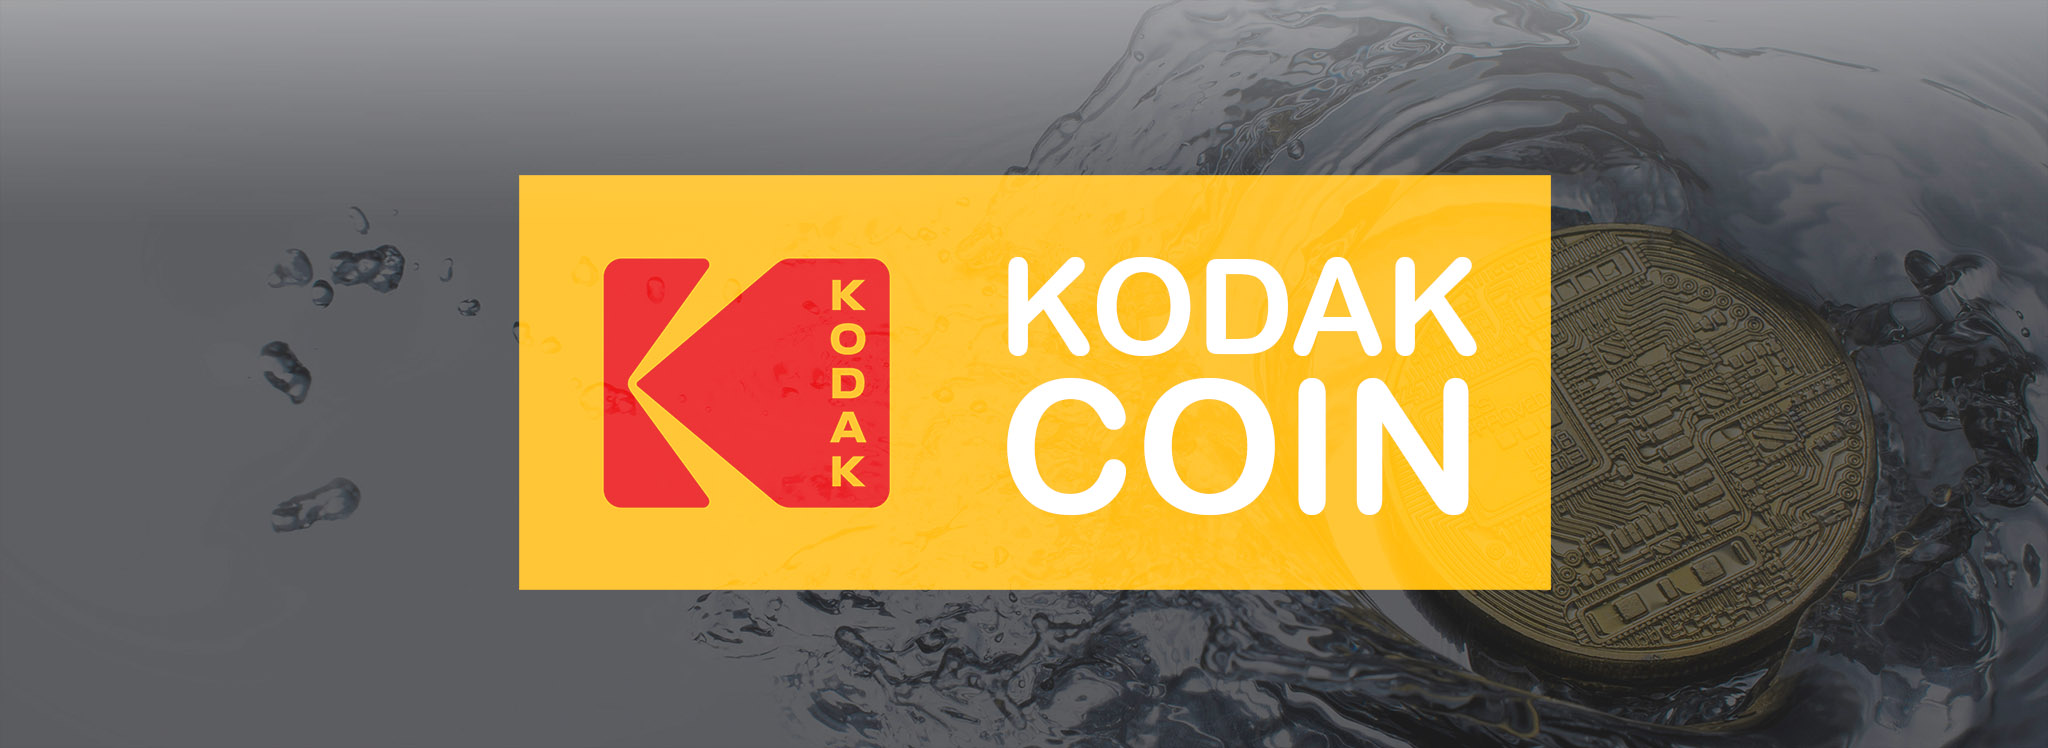 [CES18] Kodak phát hành Kodak Coin - Tiền kỹ thuật số cho nhiếp ảnh gia, cổ phiếu đột ngột tăng 320%